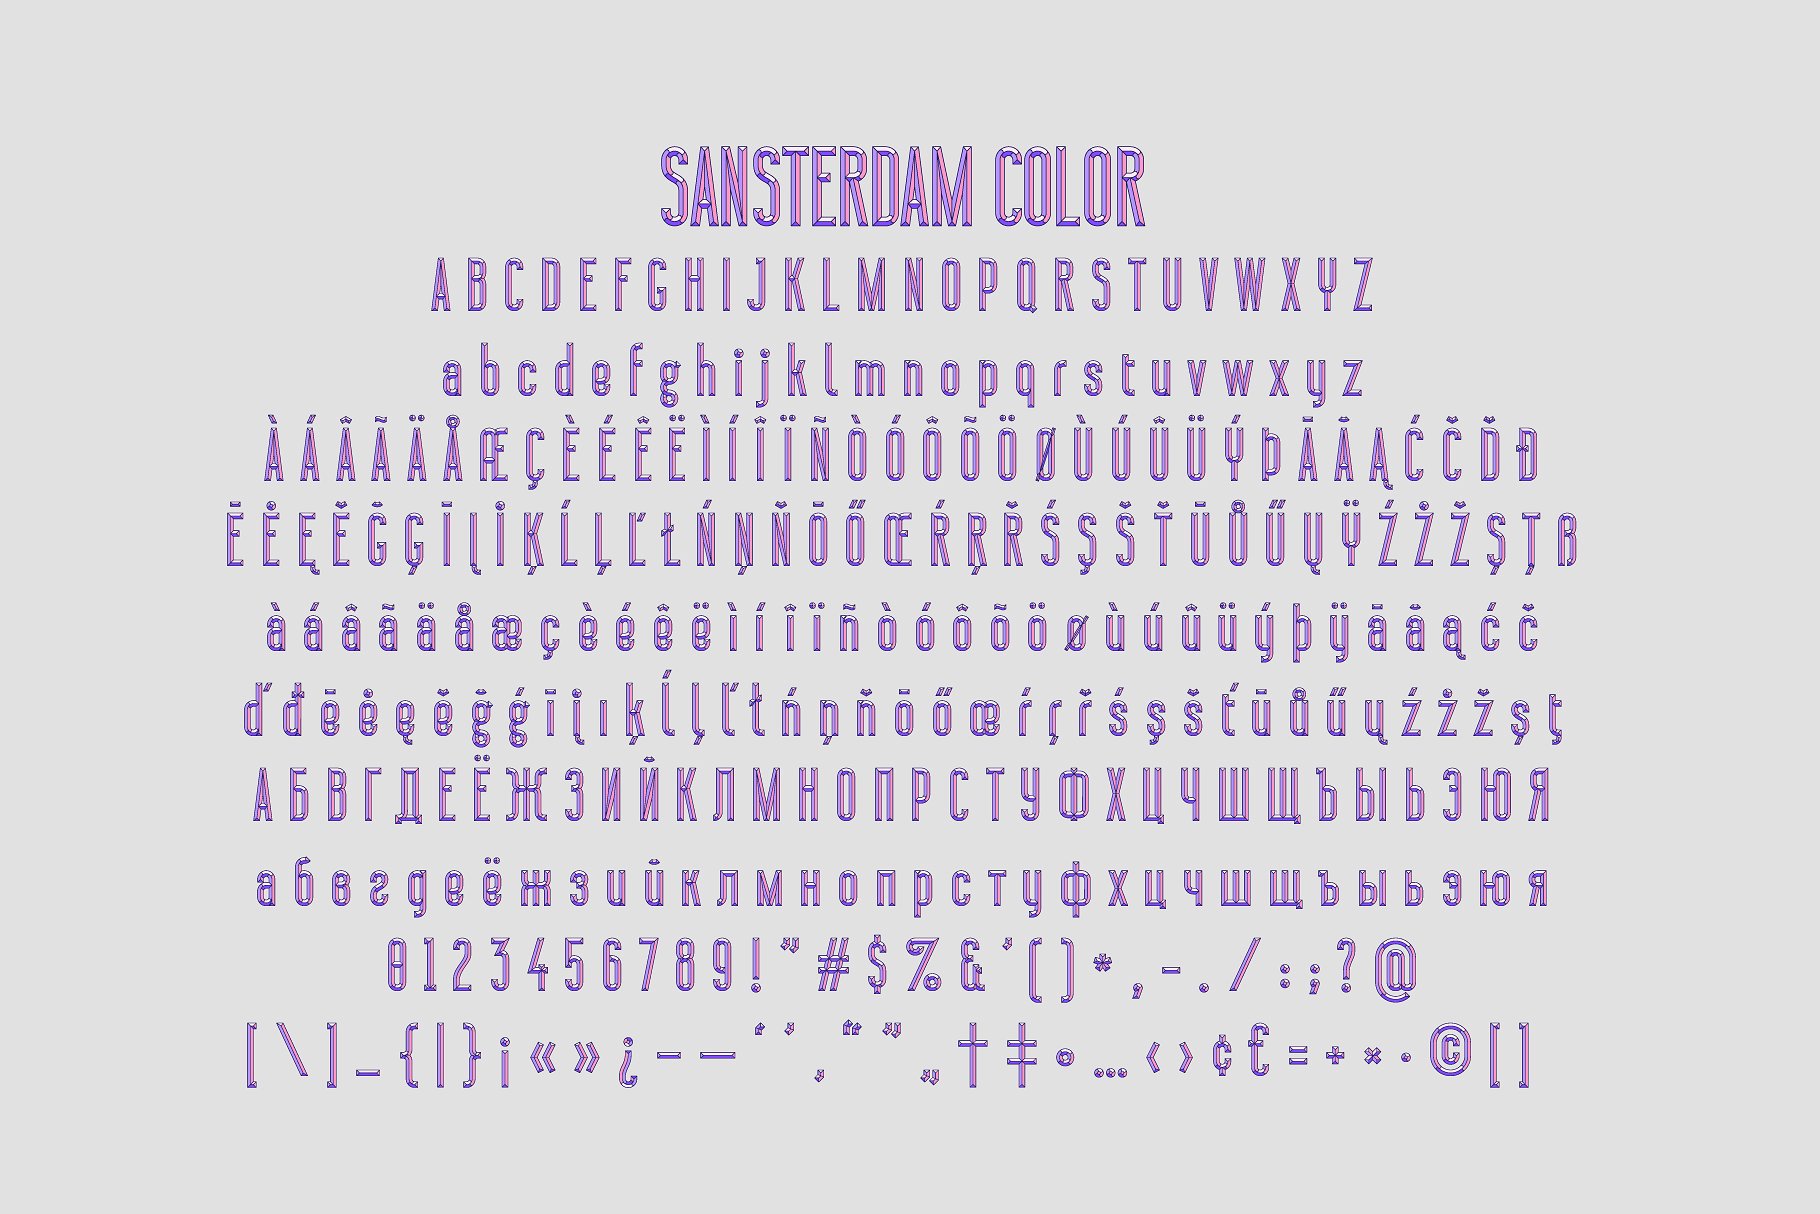 Caveat шрифт. SANSTERDAM thin deco. Font Color. Pixel Surplus font.